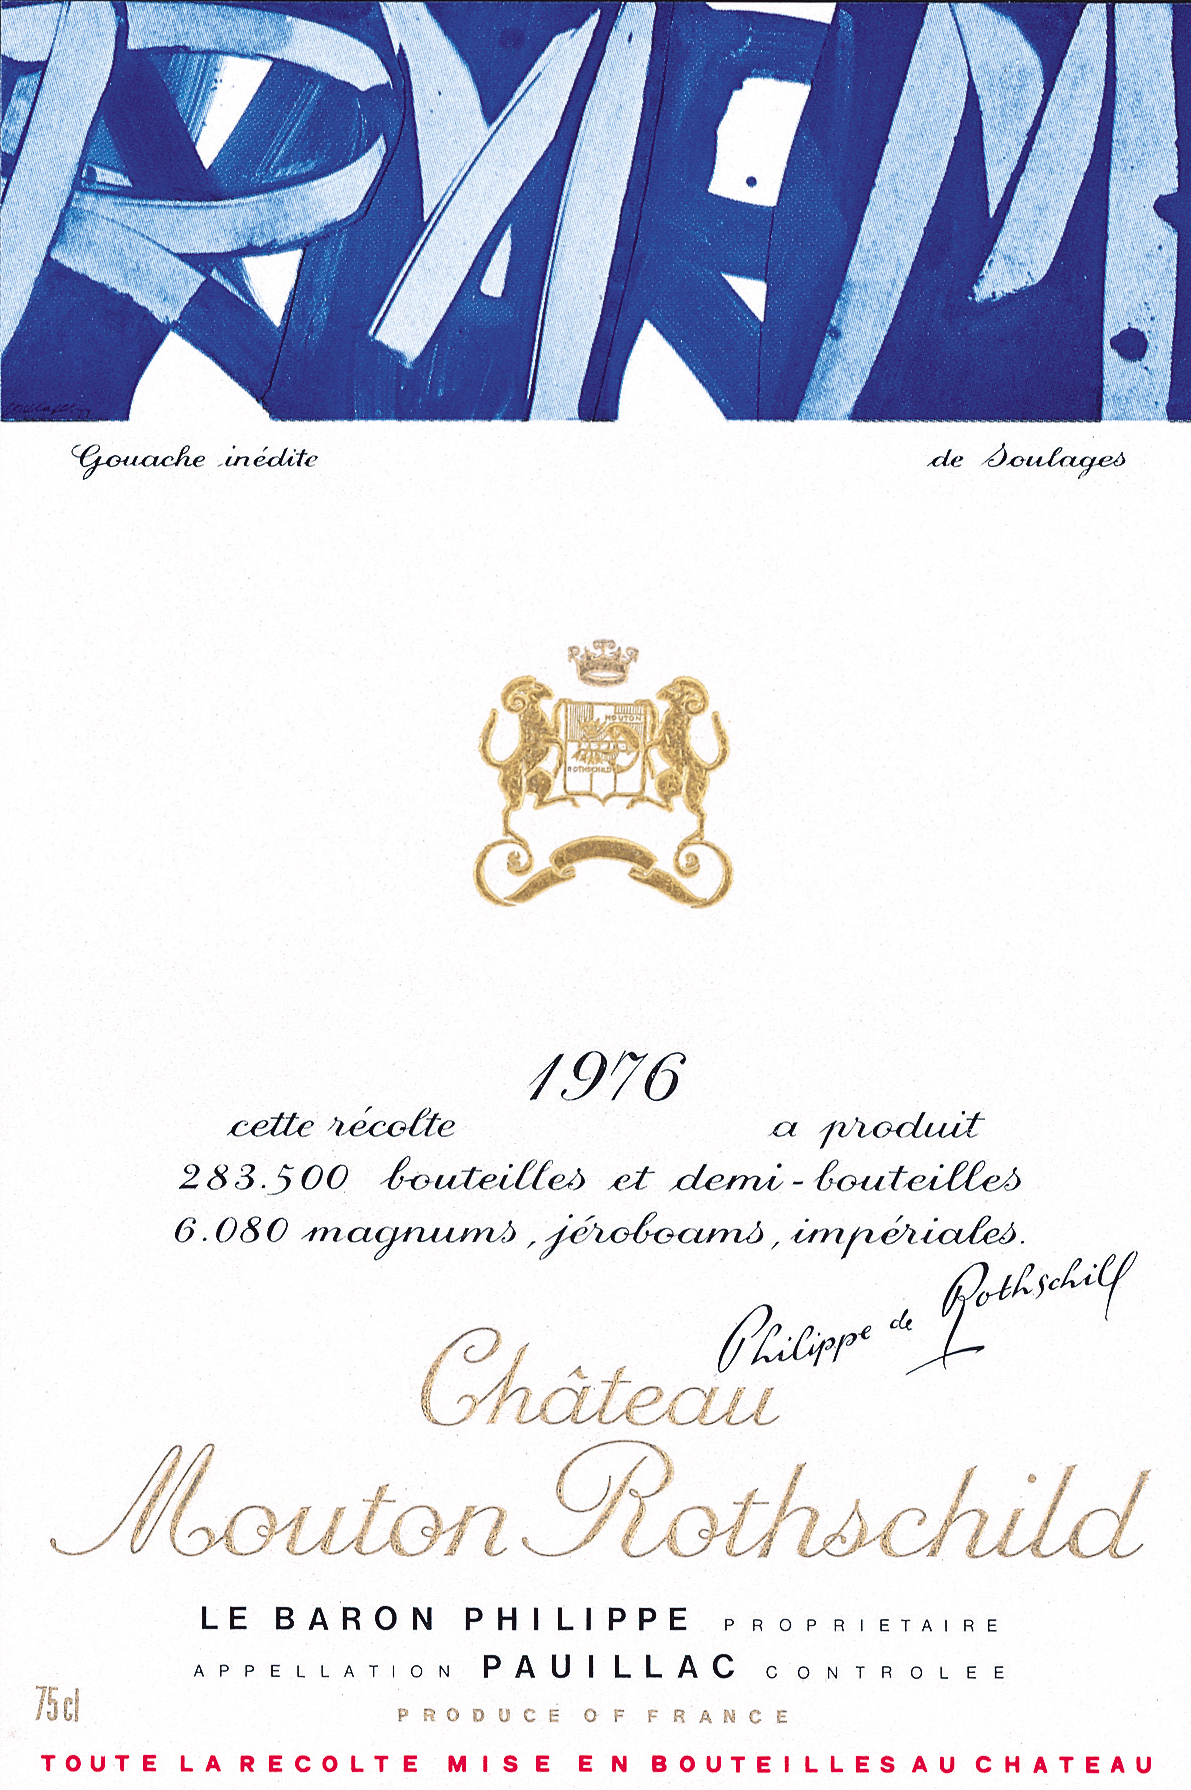 Etiquette Mouton Rothschild 1976